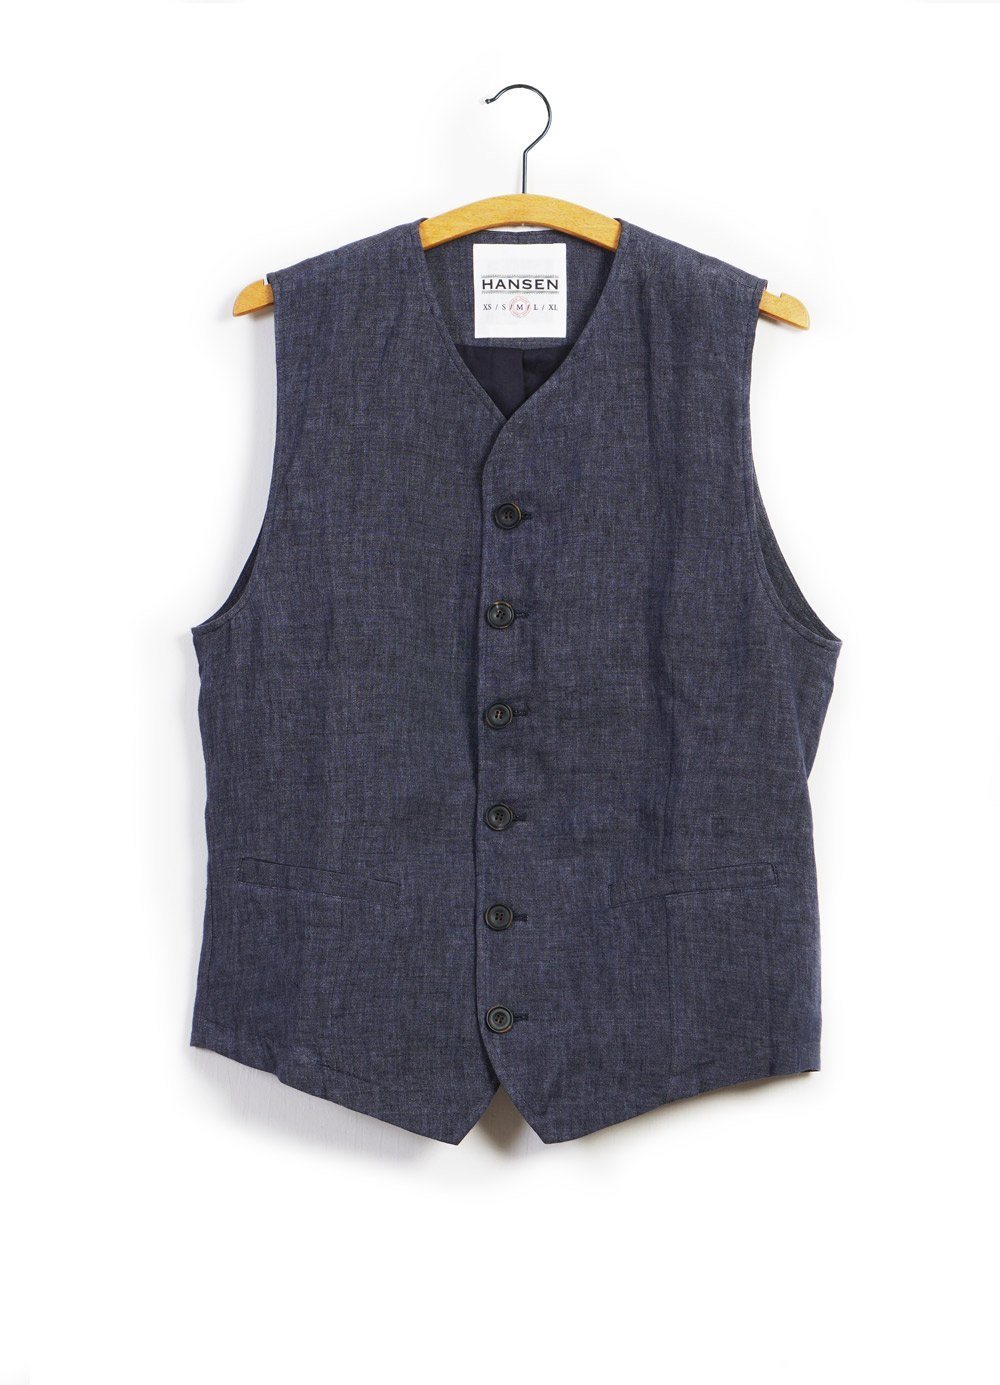 KALLE | Casual Classic Vest | Blue Delave | €225 -HANSEN Garments- HANSEN Garments